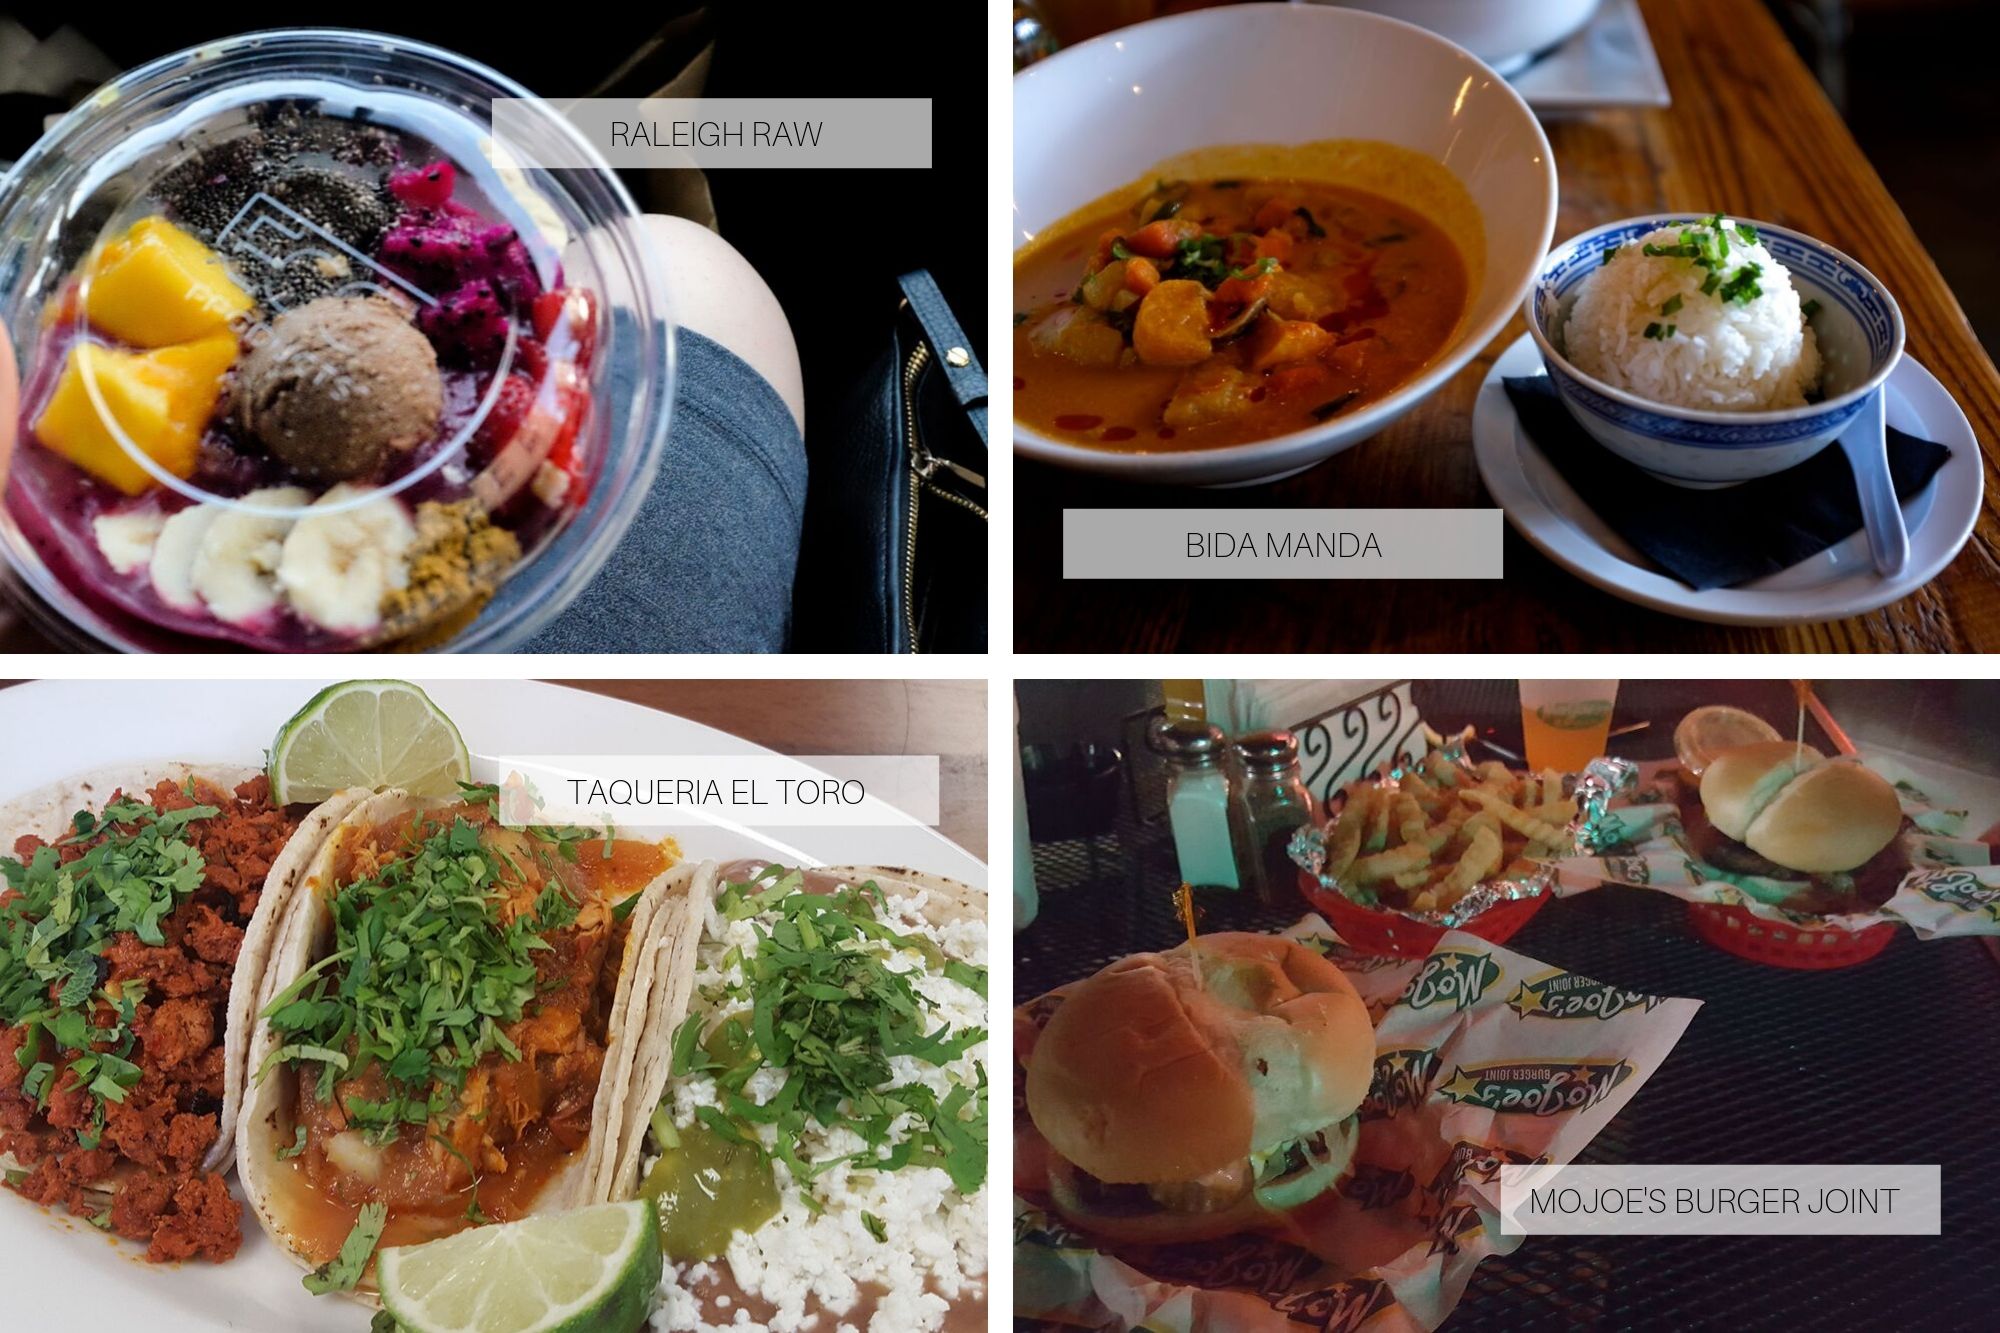 Collage: Acai bowl from Raleigh Raw, Curry at Bida Manda, Tacos from El Toro, Burgers at MoJoes